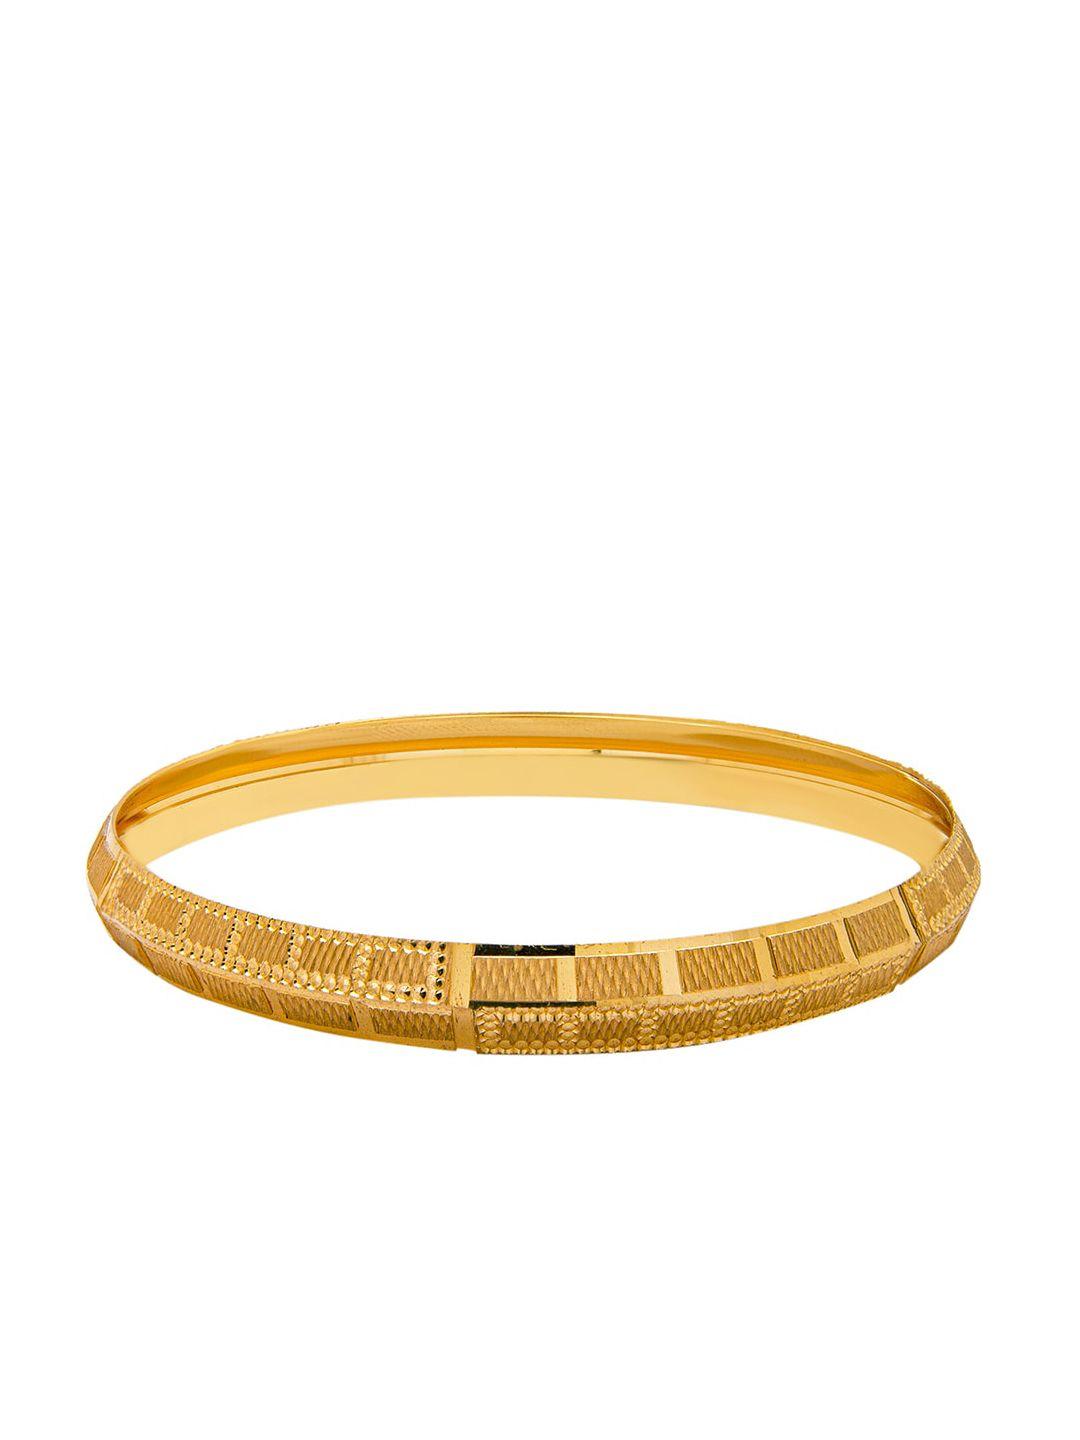 bodha men gold bracelet